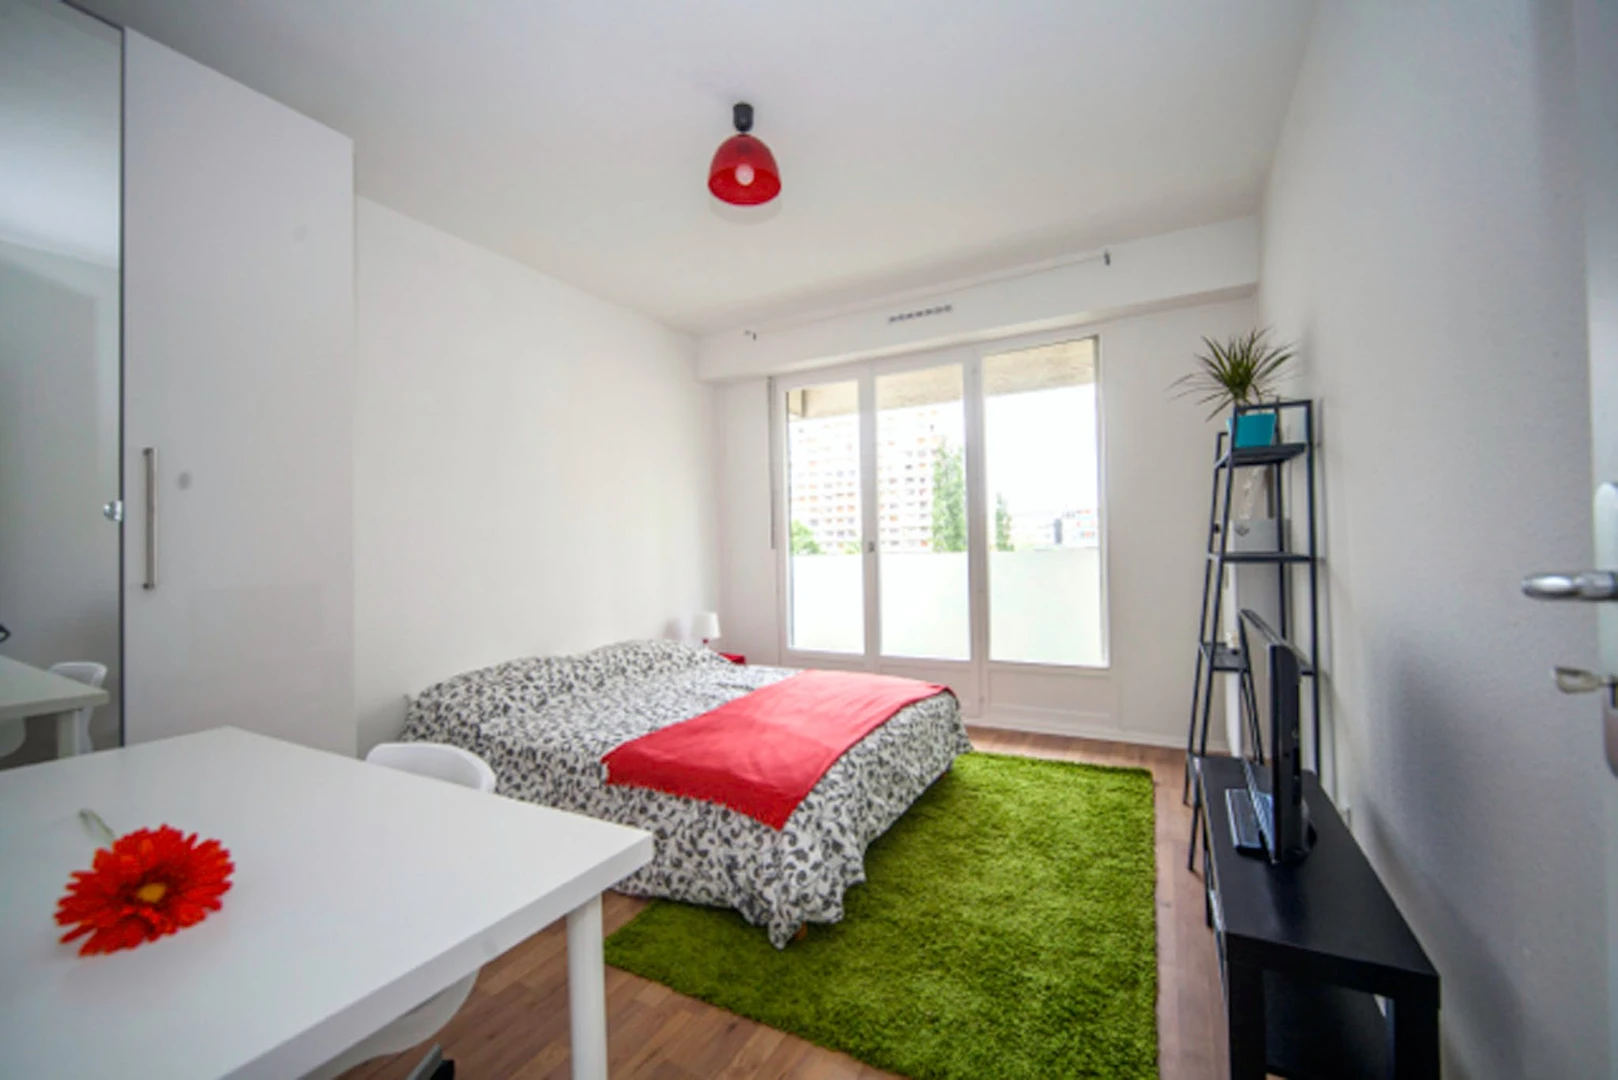 Alquiler de habitación en piso compartido en Estrasburgo